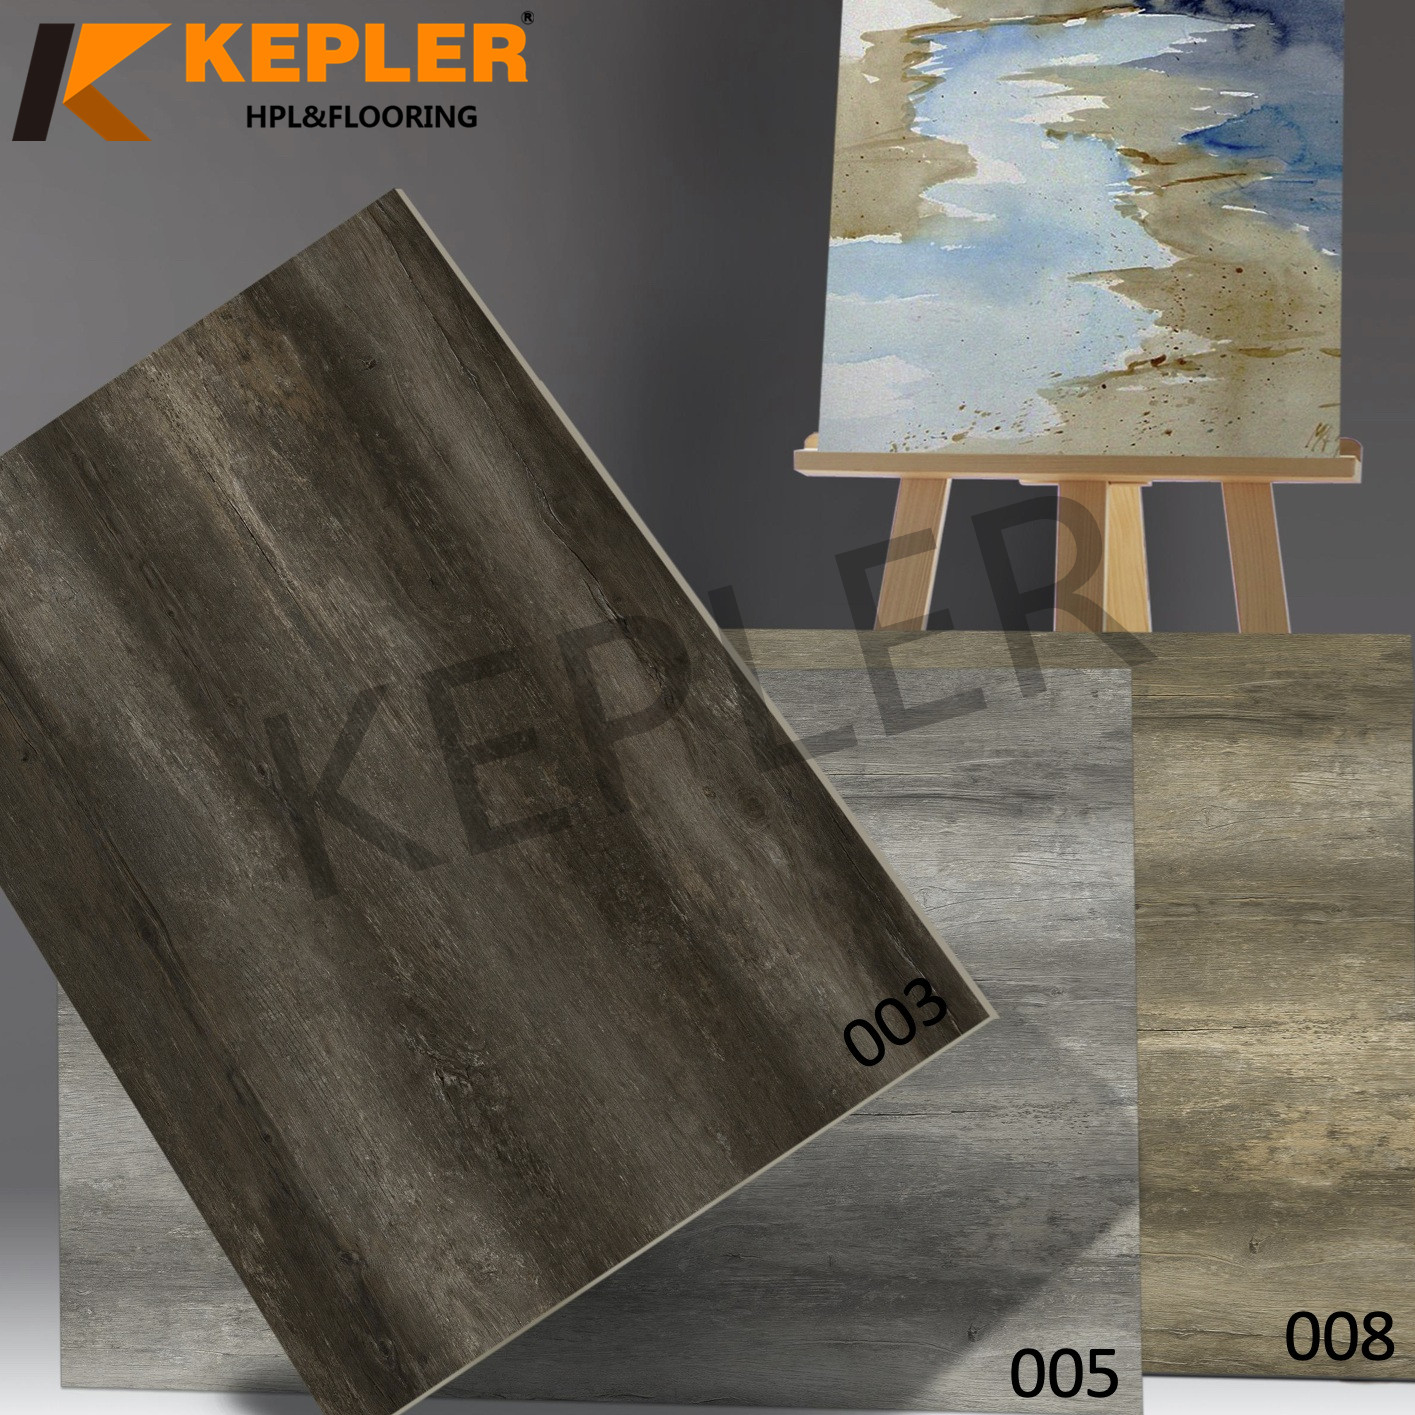 Kepler Hybrid RVP Rigid Vinyl Plank SPC Flooring 96103